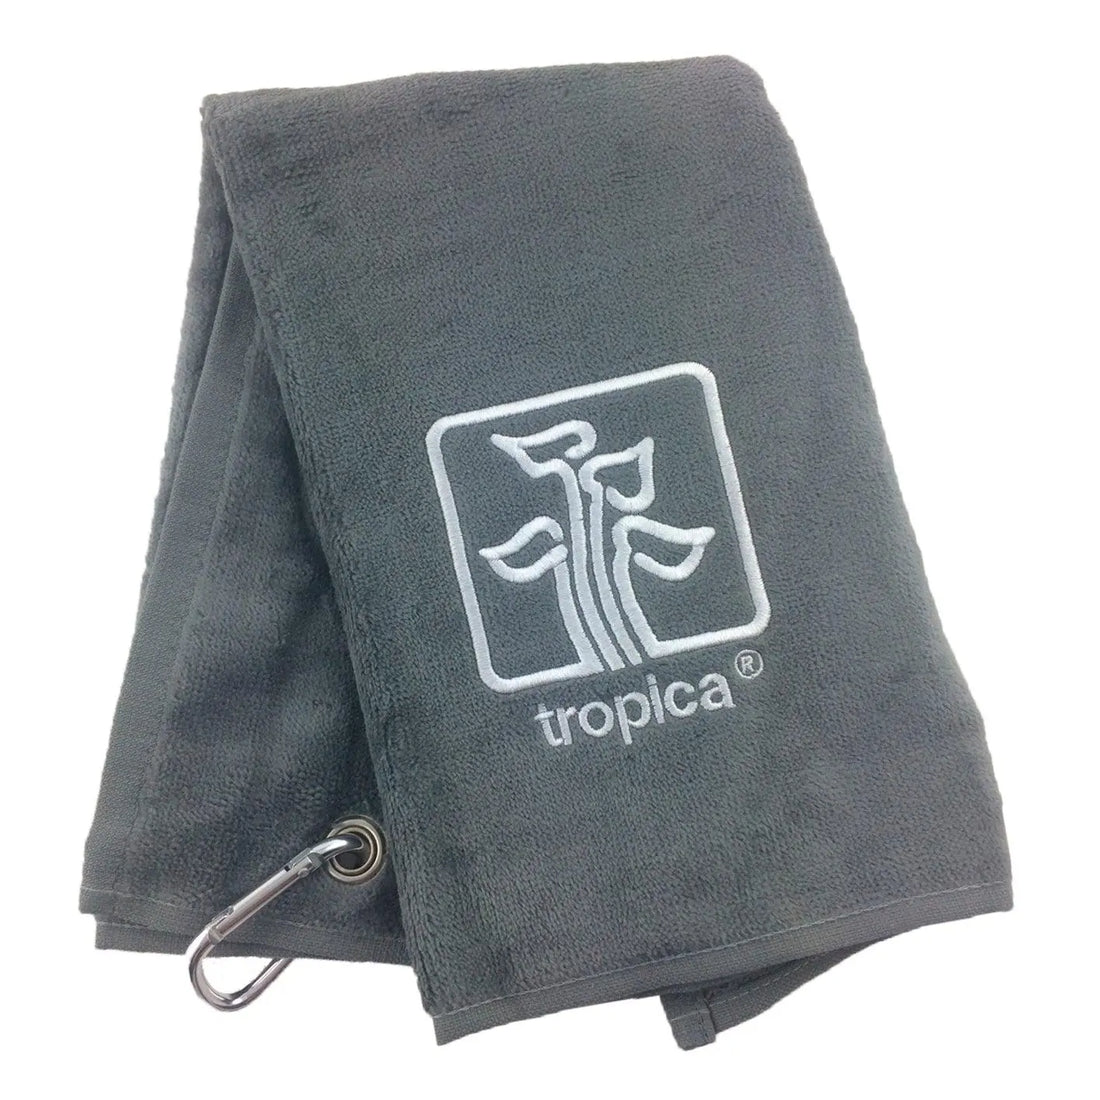 Tropica Towel with Belt Clip - Aqua Essentials